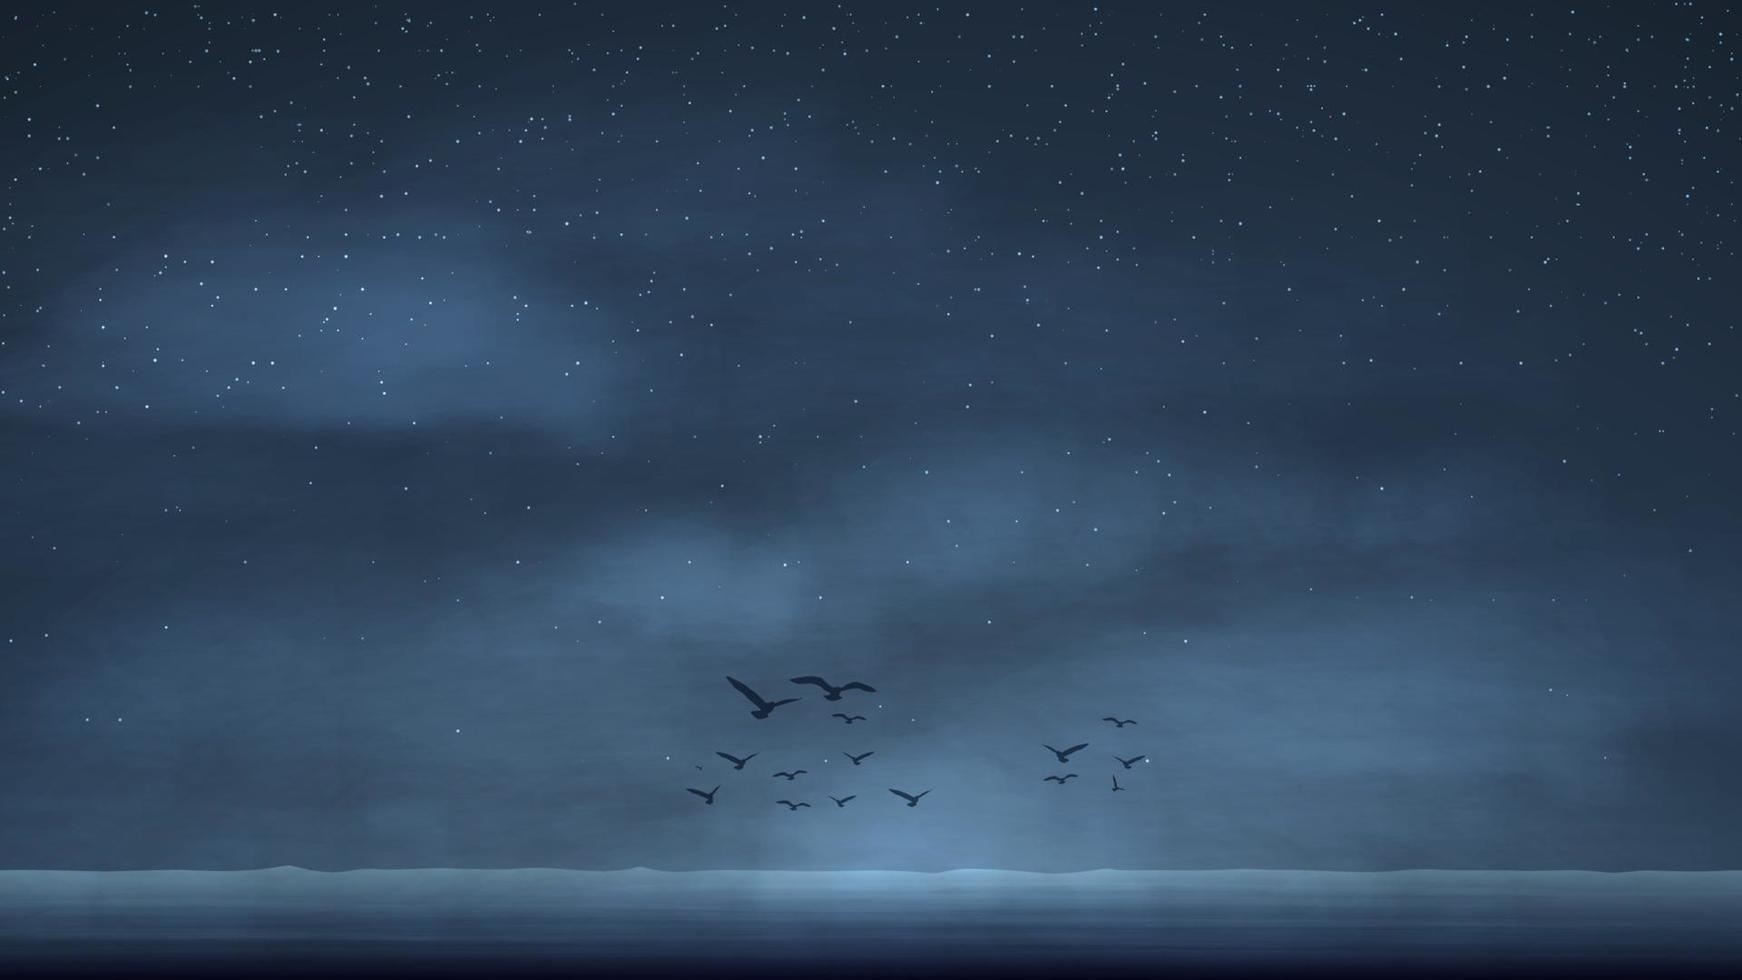 nachtzeegezicht met sterrenhemel en vogels aan de horizon boven het water vector